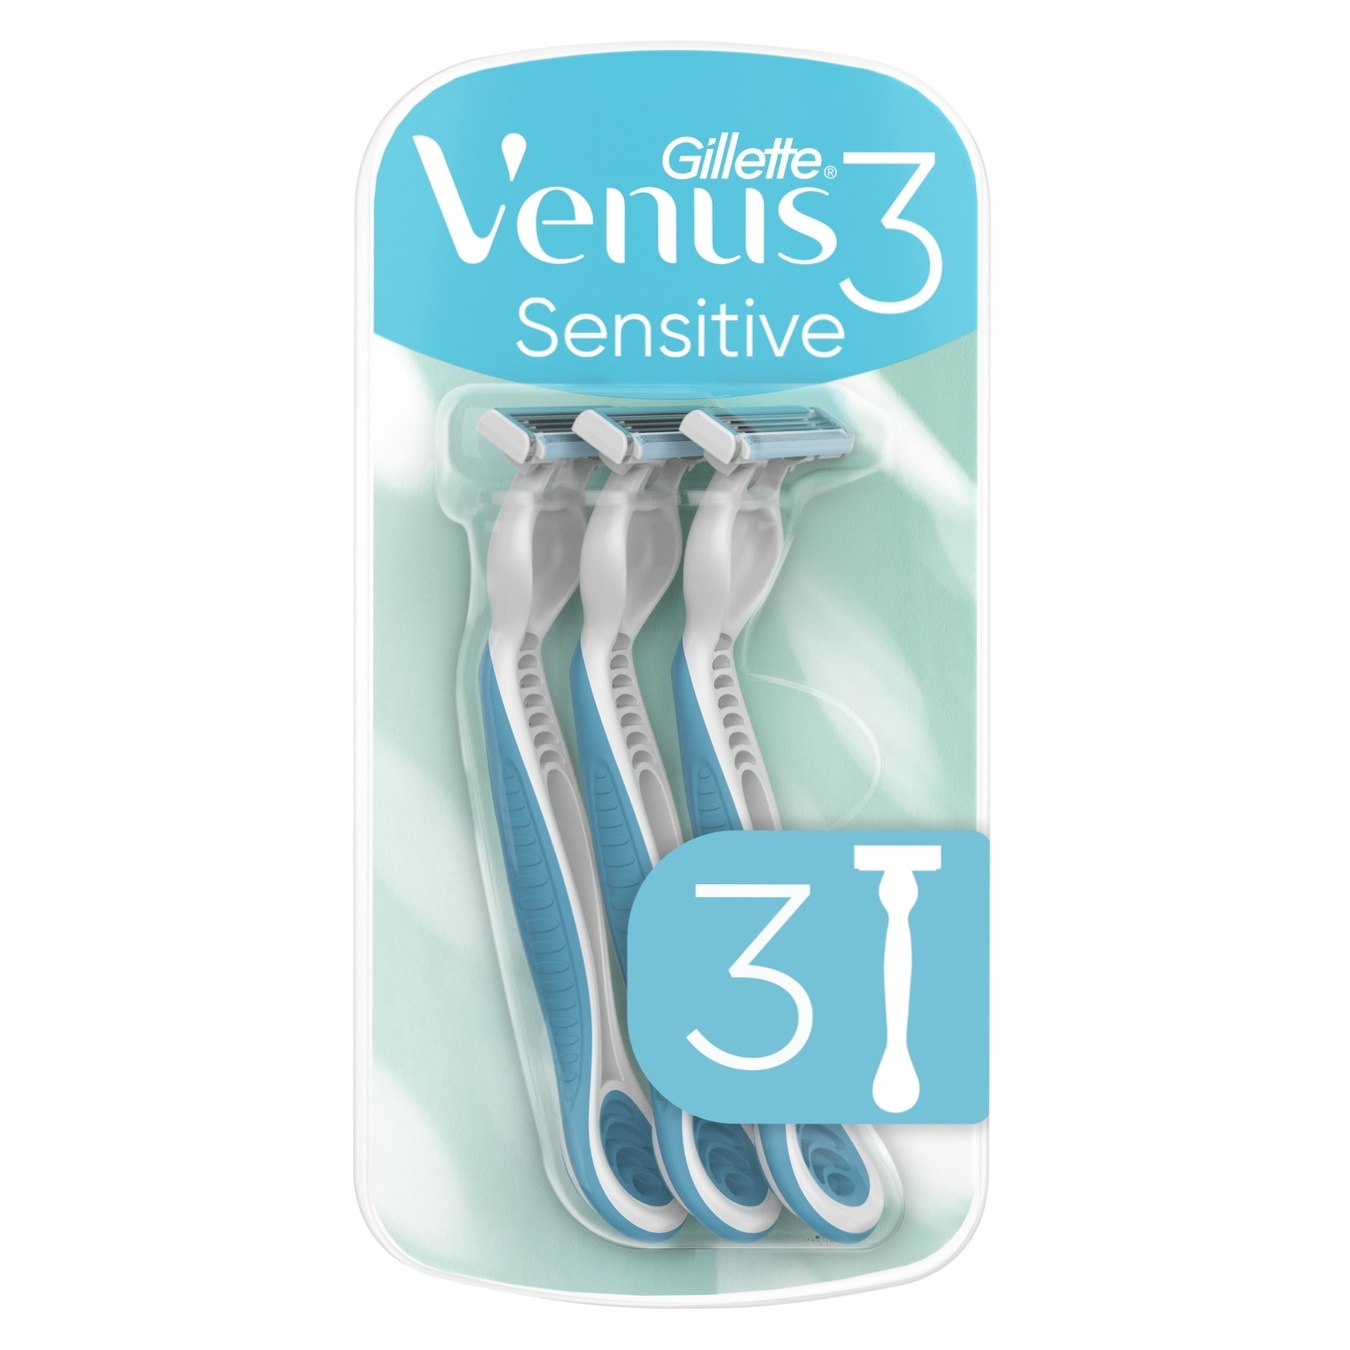 Disposable razors Gillette Venus 3 Sensitive for women 3 pcs